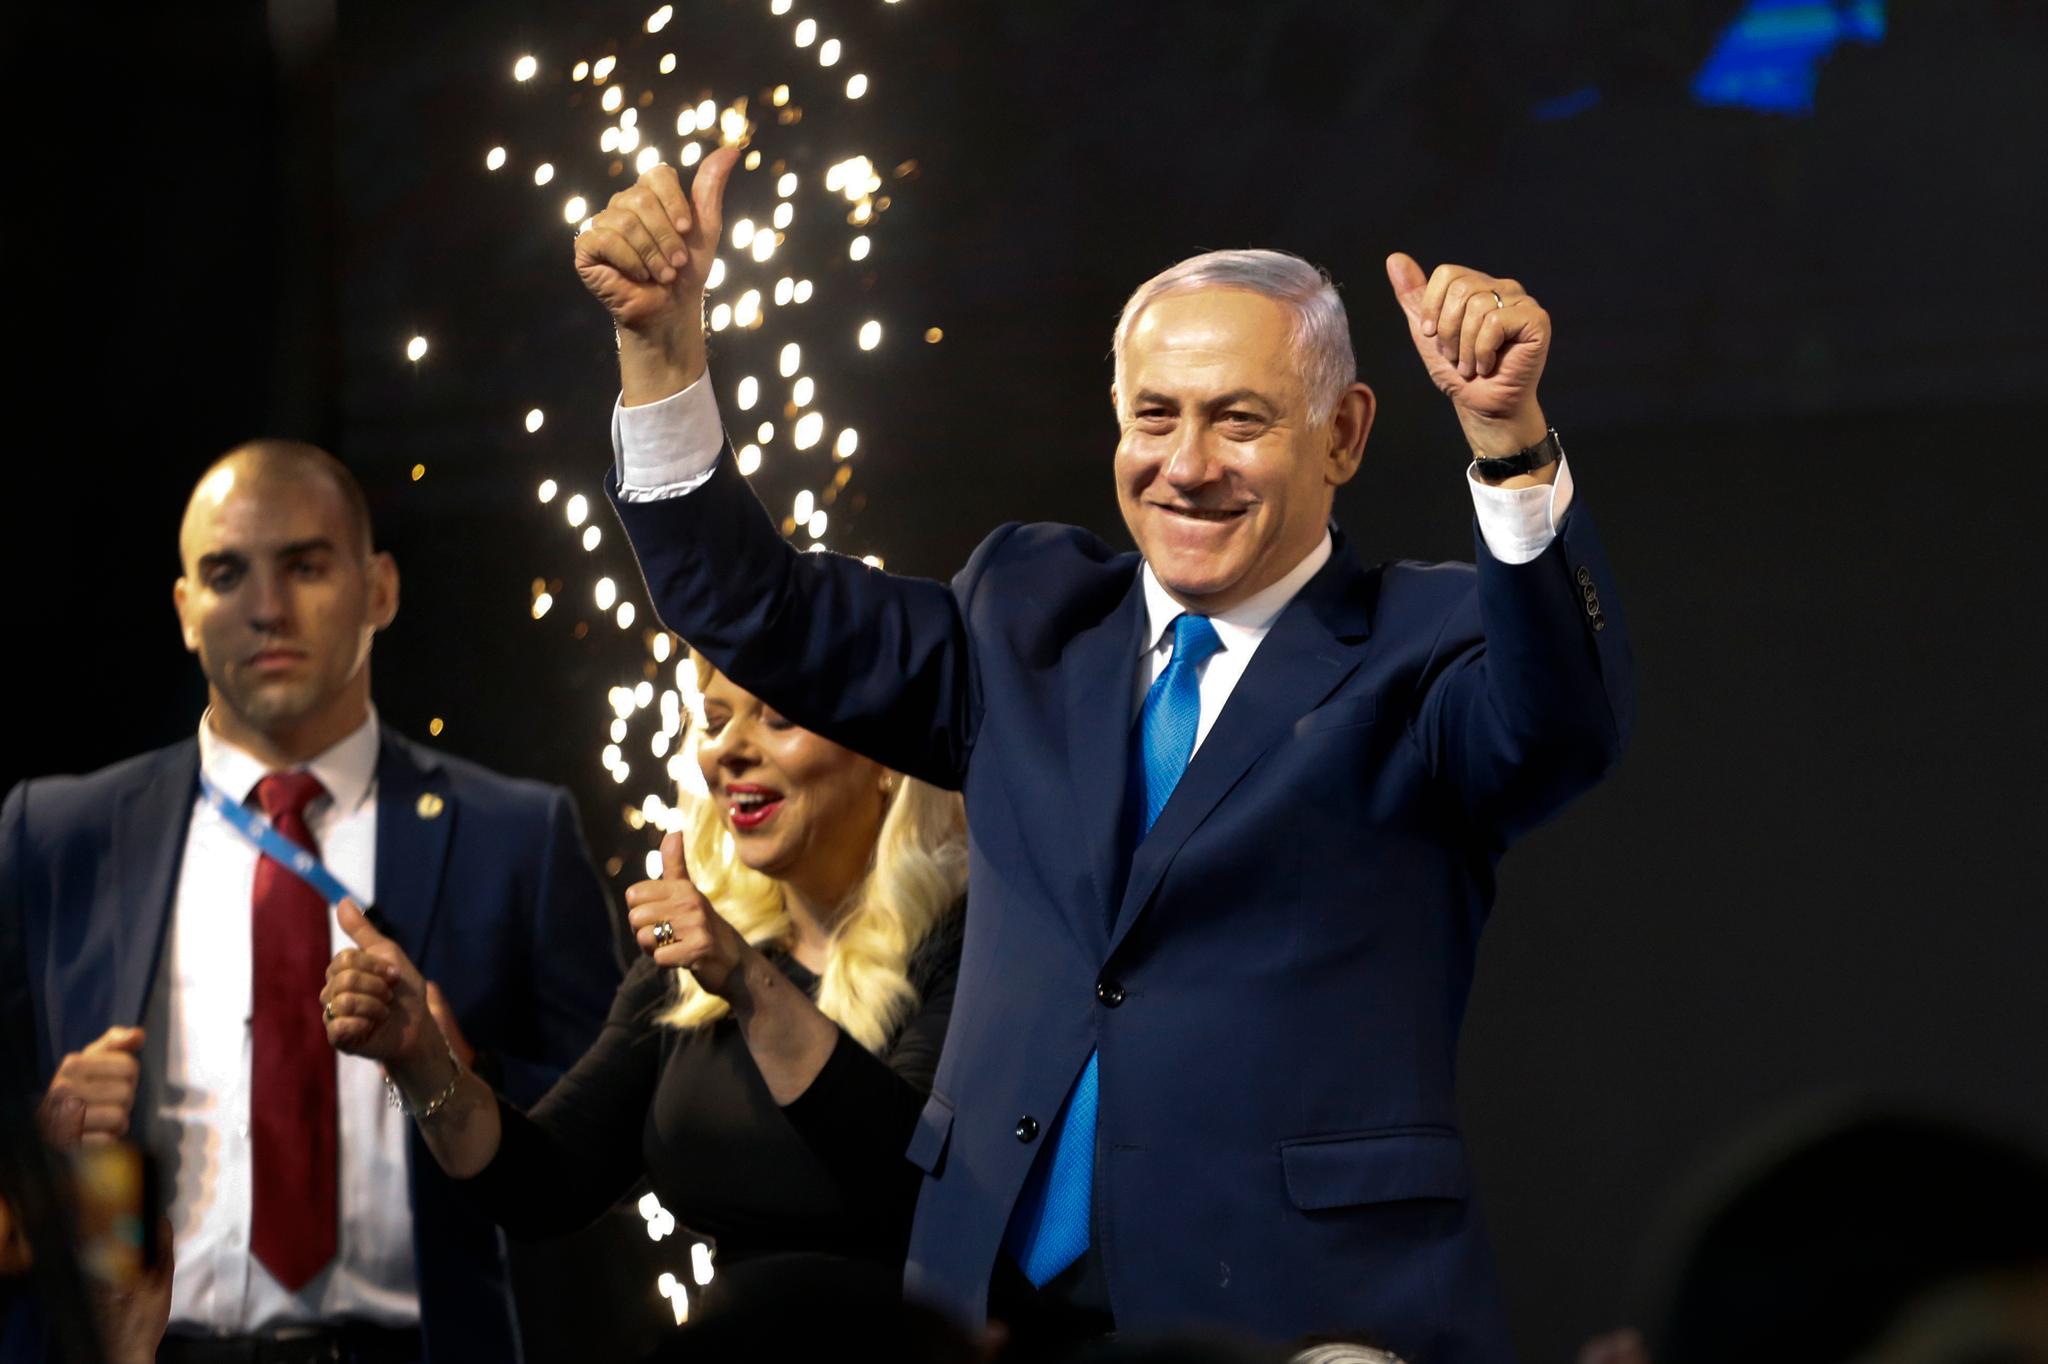 Med onsdagens seier sikrer Netanyahu seg sin femte statsministerperiode. I sommer blir han i så fall den lengstsittende statsministeren i Israels historie. Foto: Ariel Schalit / AP / NTB scanpix